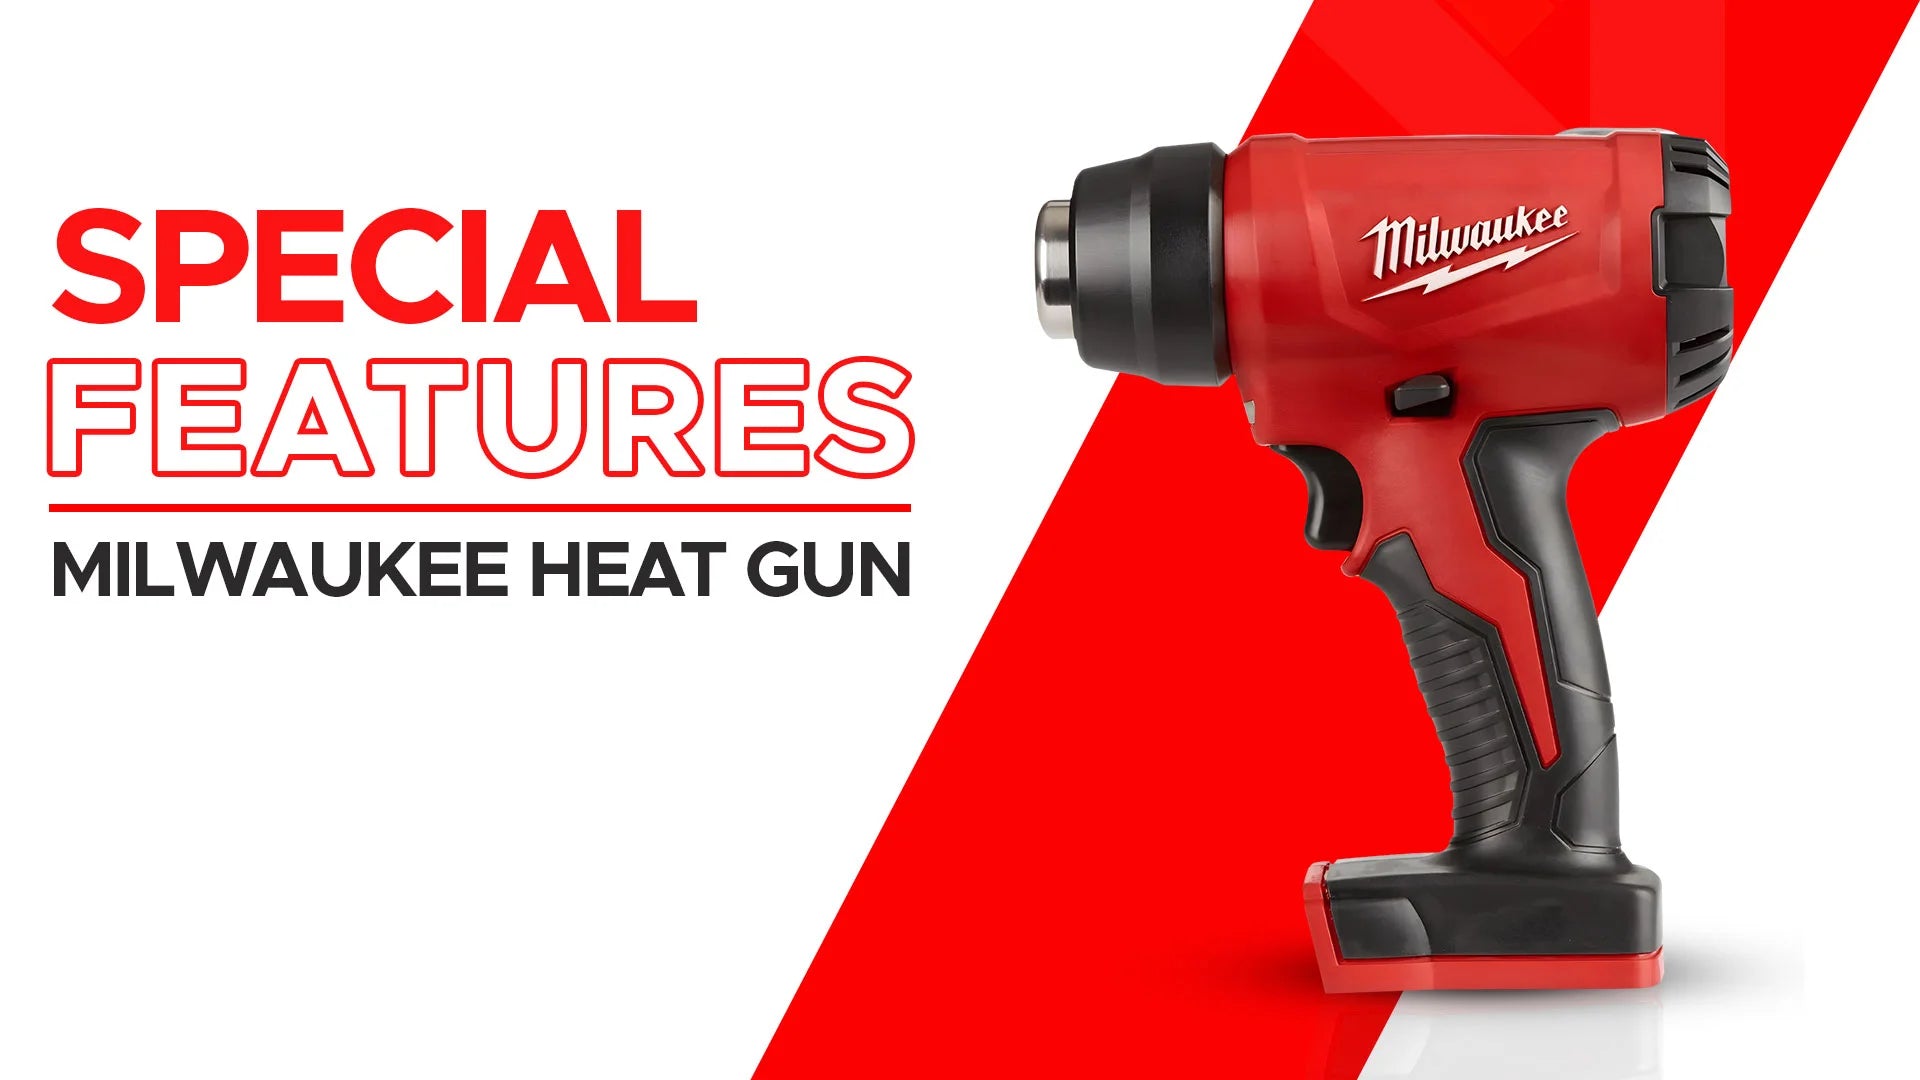 Milwaukee Heat Gun Features